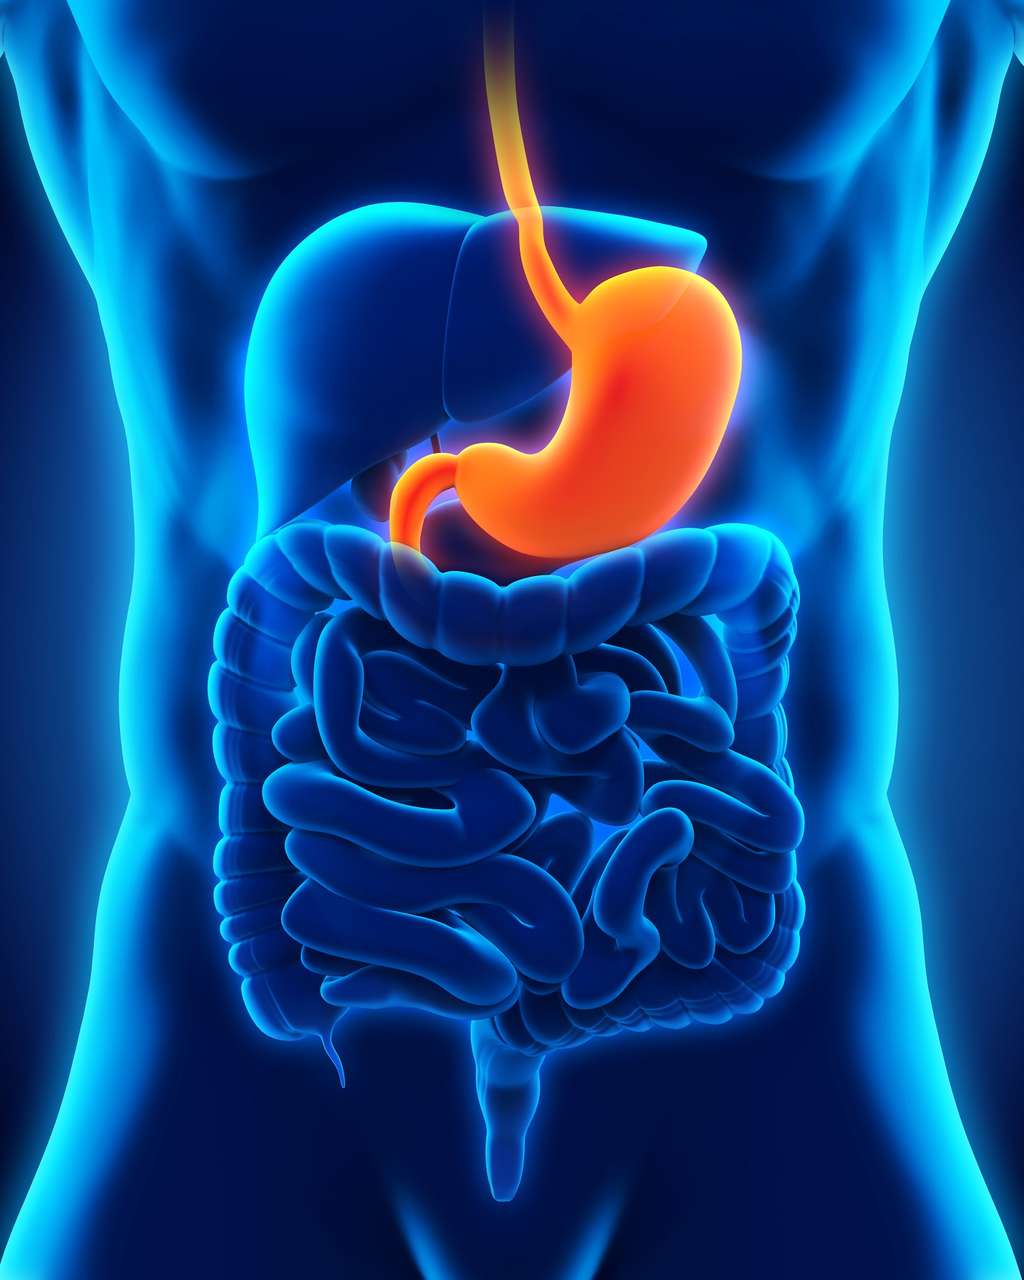 Lorsque les aliments arrivent dans l’estomac, un message est envoyé aux centres nerveux par le nerf vagal. © Nerthuz, Shutterstock